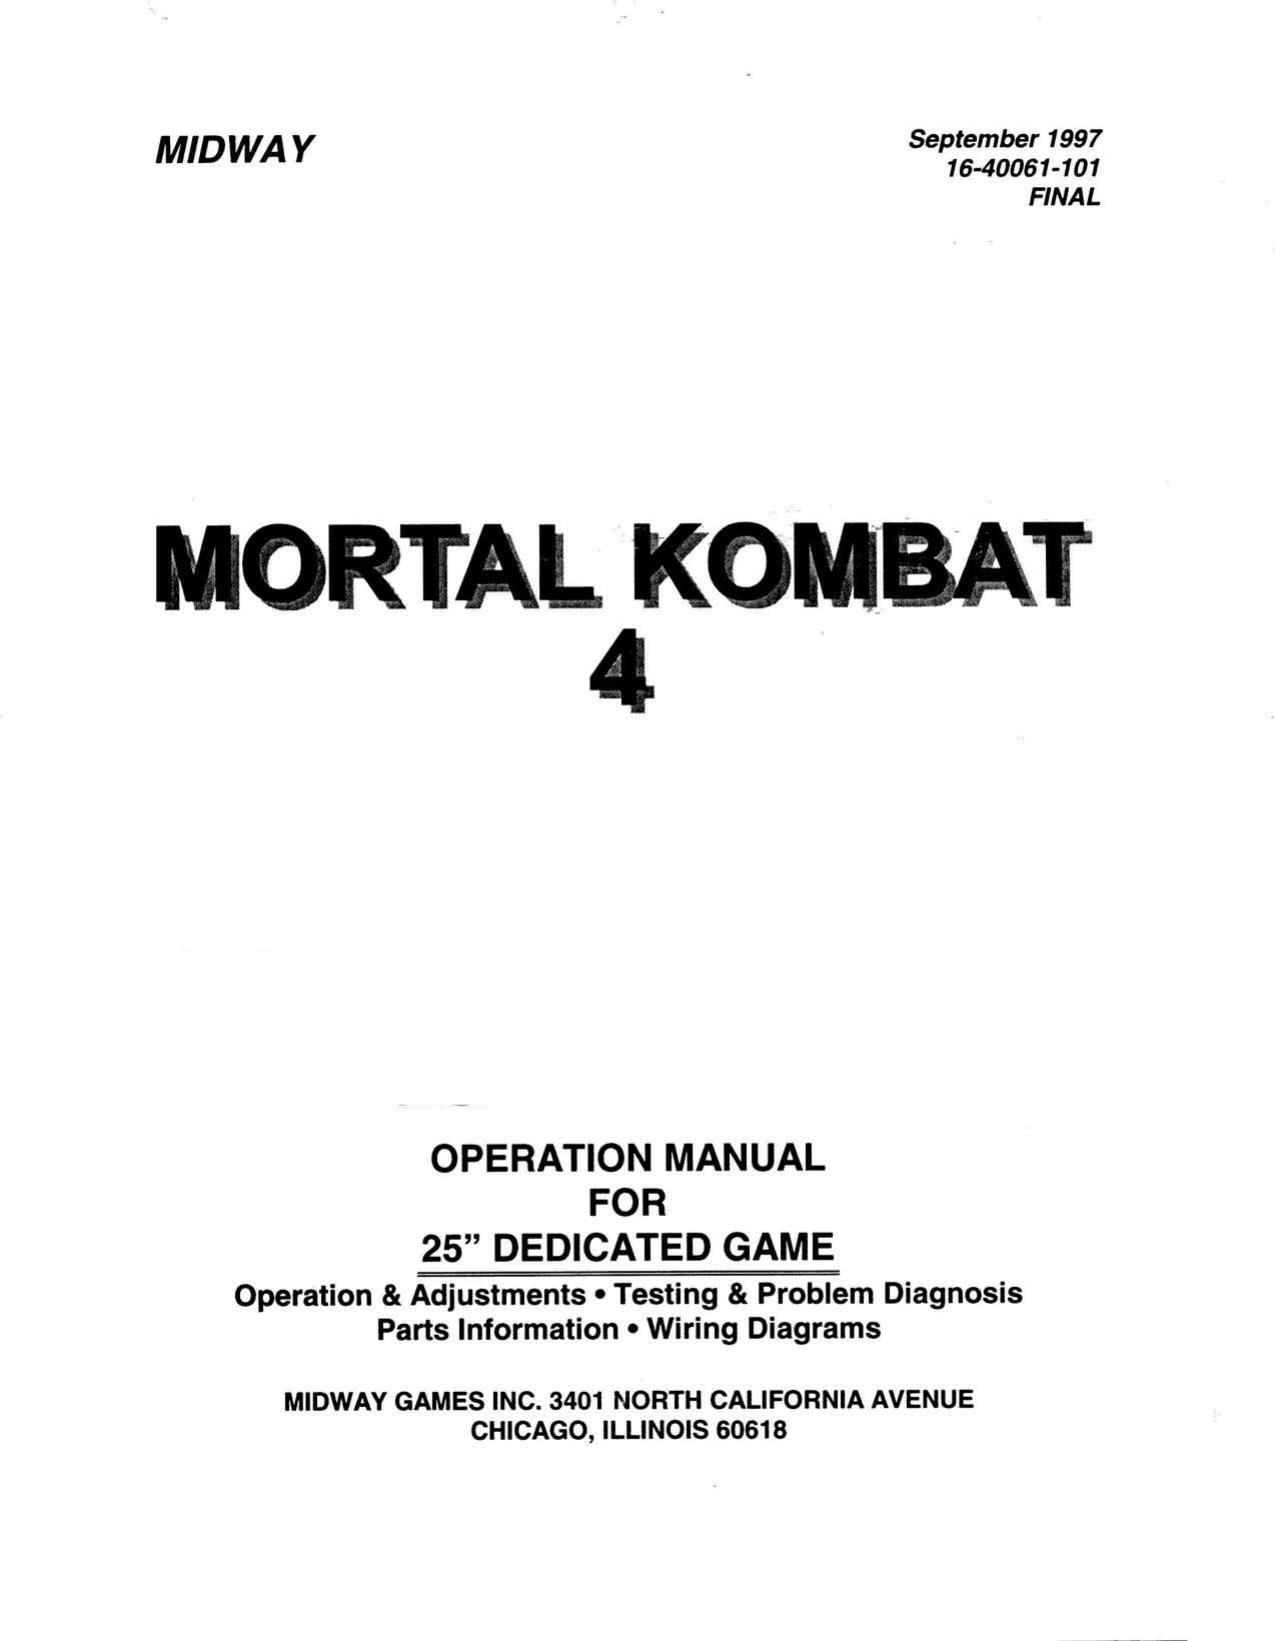 Mortal Kombat 4 25in Dedicated (16-40061-101 Final Sep 1997)